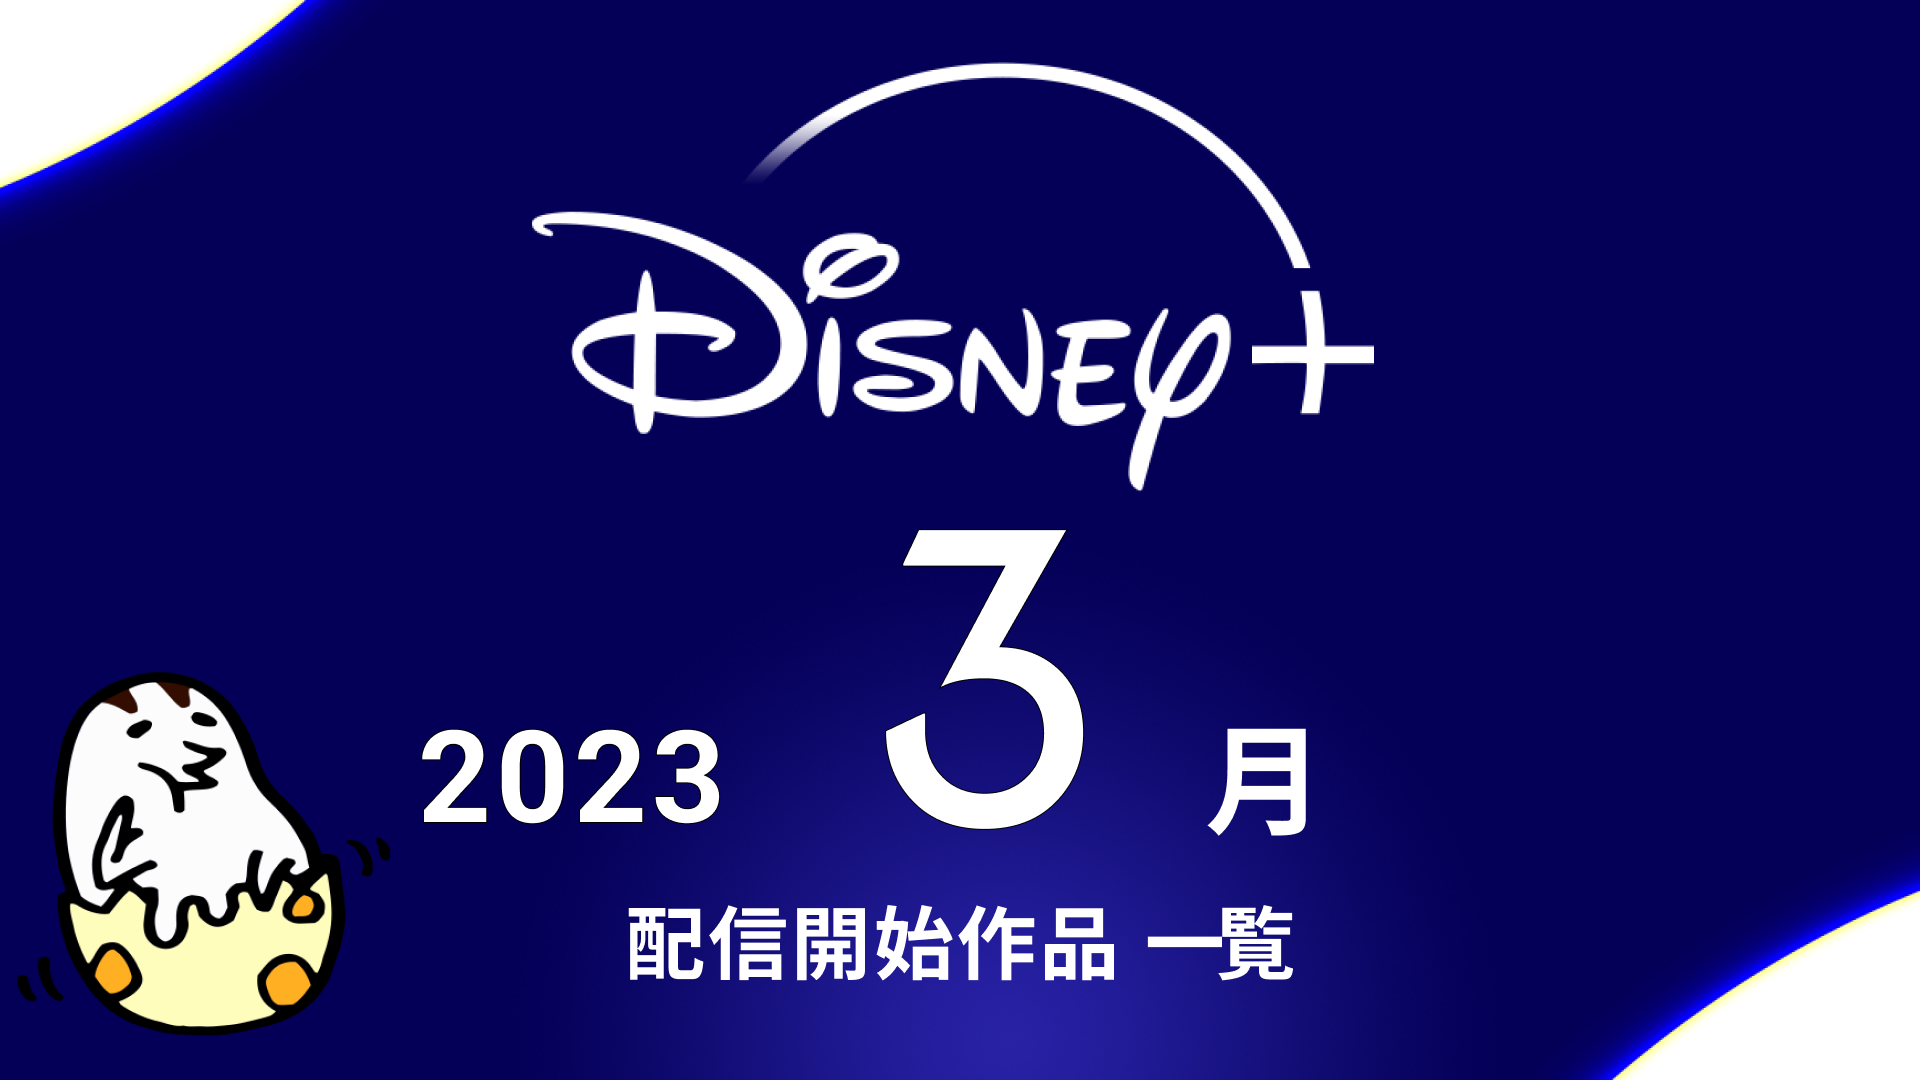 Disney+(ディズニープラス) 2023年3月配信作品一覧 『マンダロリアン シーズン3』『アウルハウス シーズン2』『天才少女ドギー・カメアロハ シーズン2』など新シリーズ盛りだくさん！